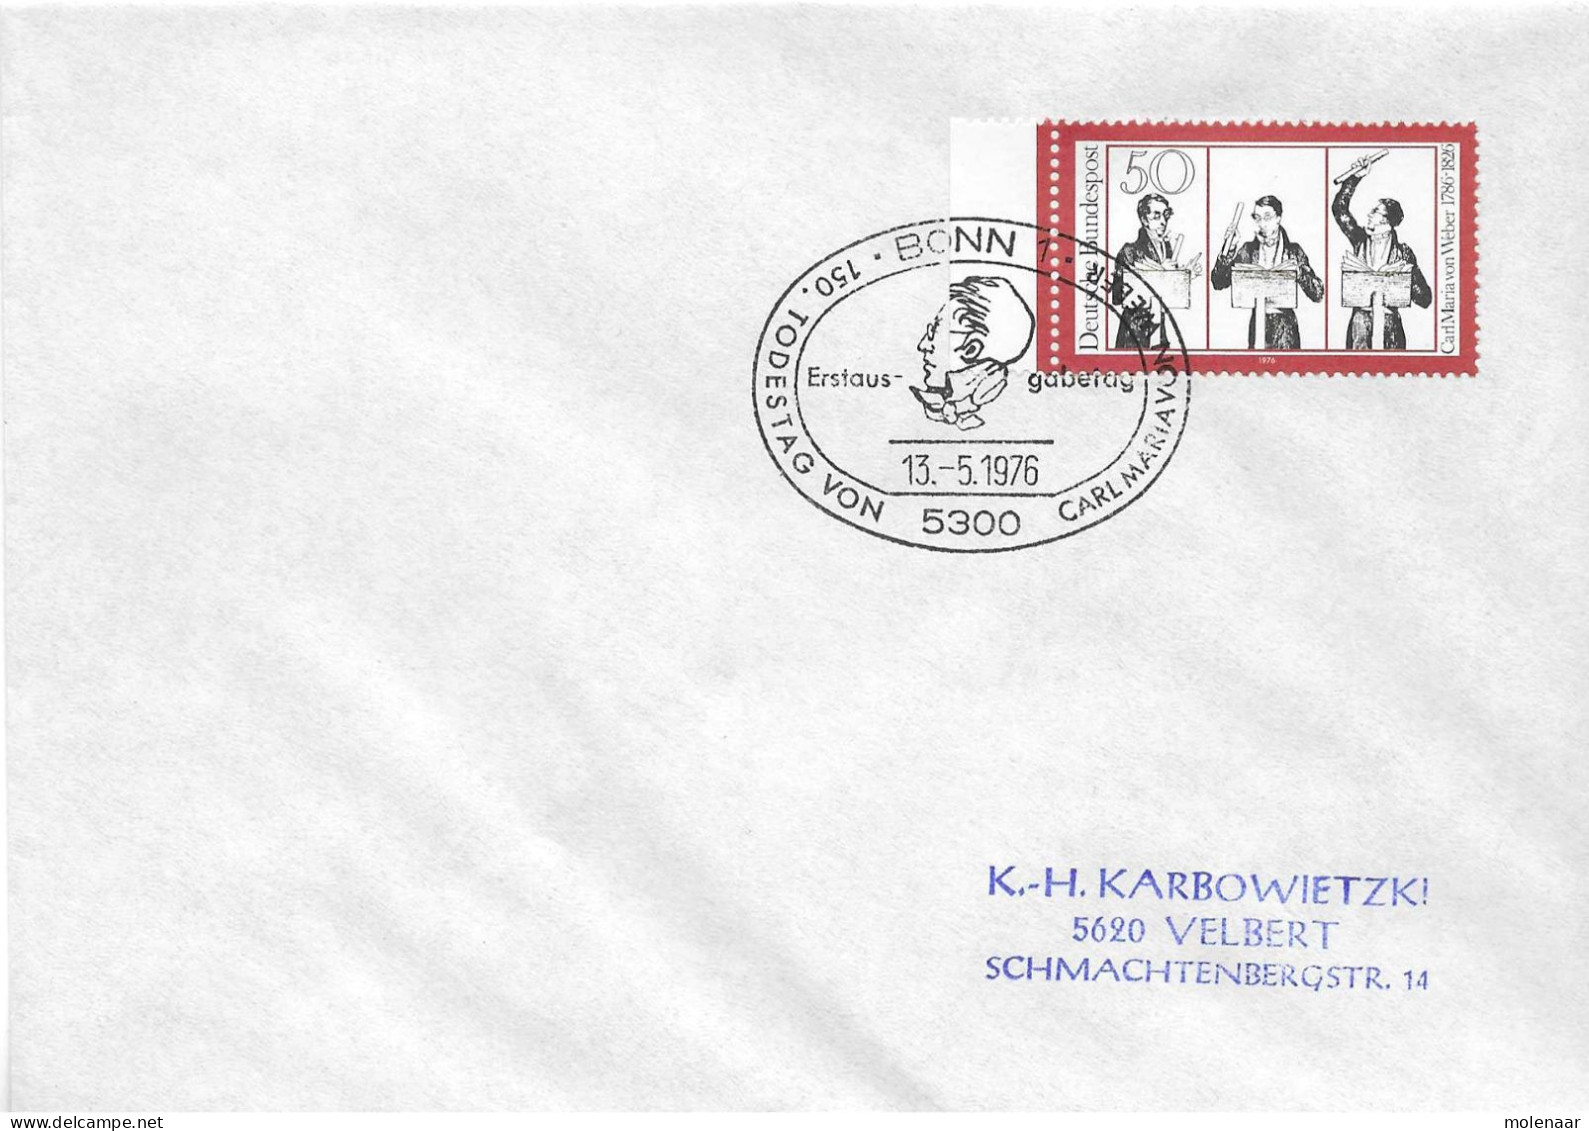 Postzegels > Europa > Duitsland > West-Duitsland > 1970-1979 > Brief Met No. 894  (17354) - Storia Postale